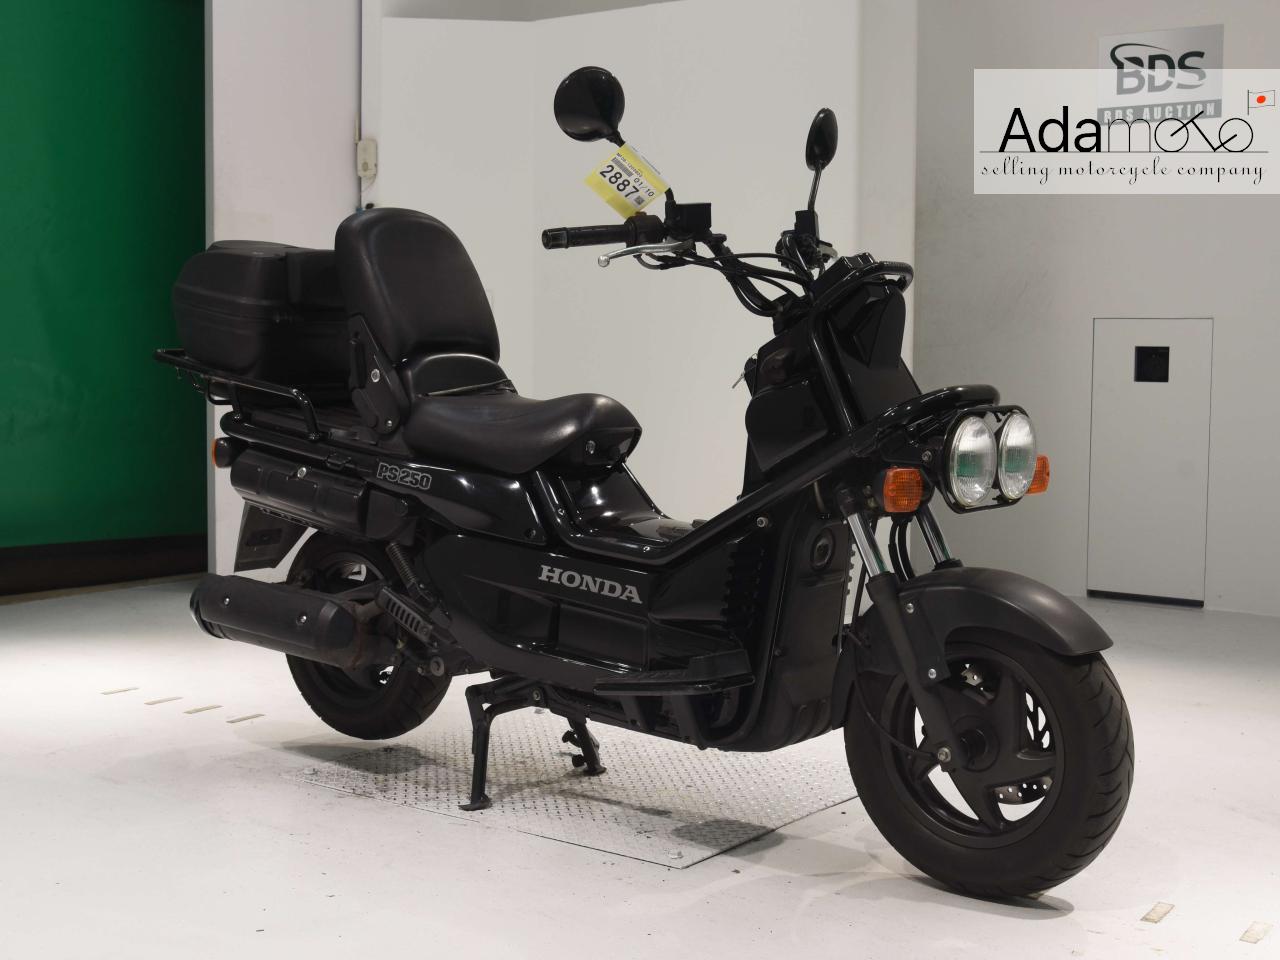 Honda PS250 - Adamoto - Motorcycles from Japan